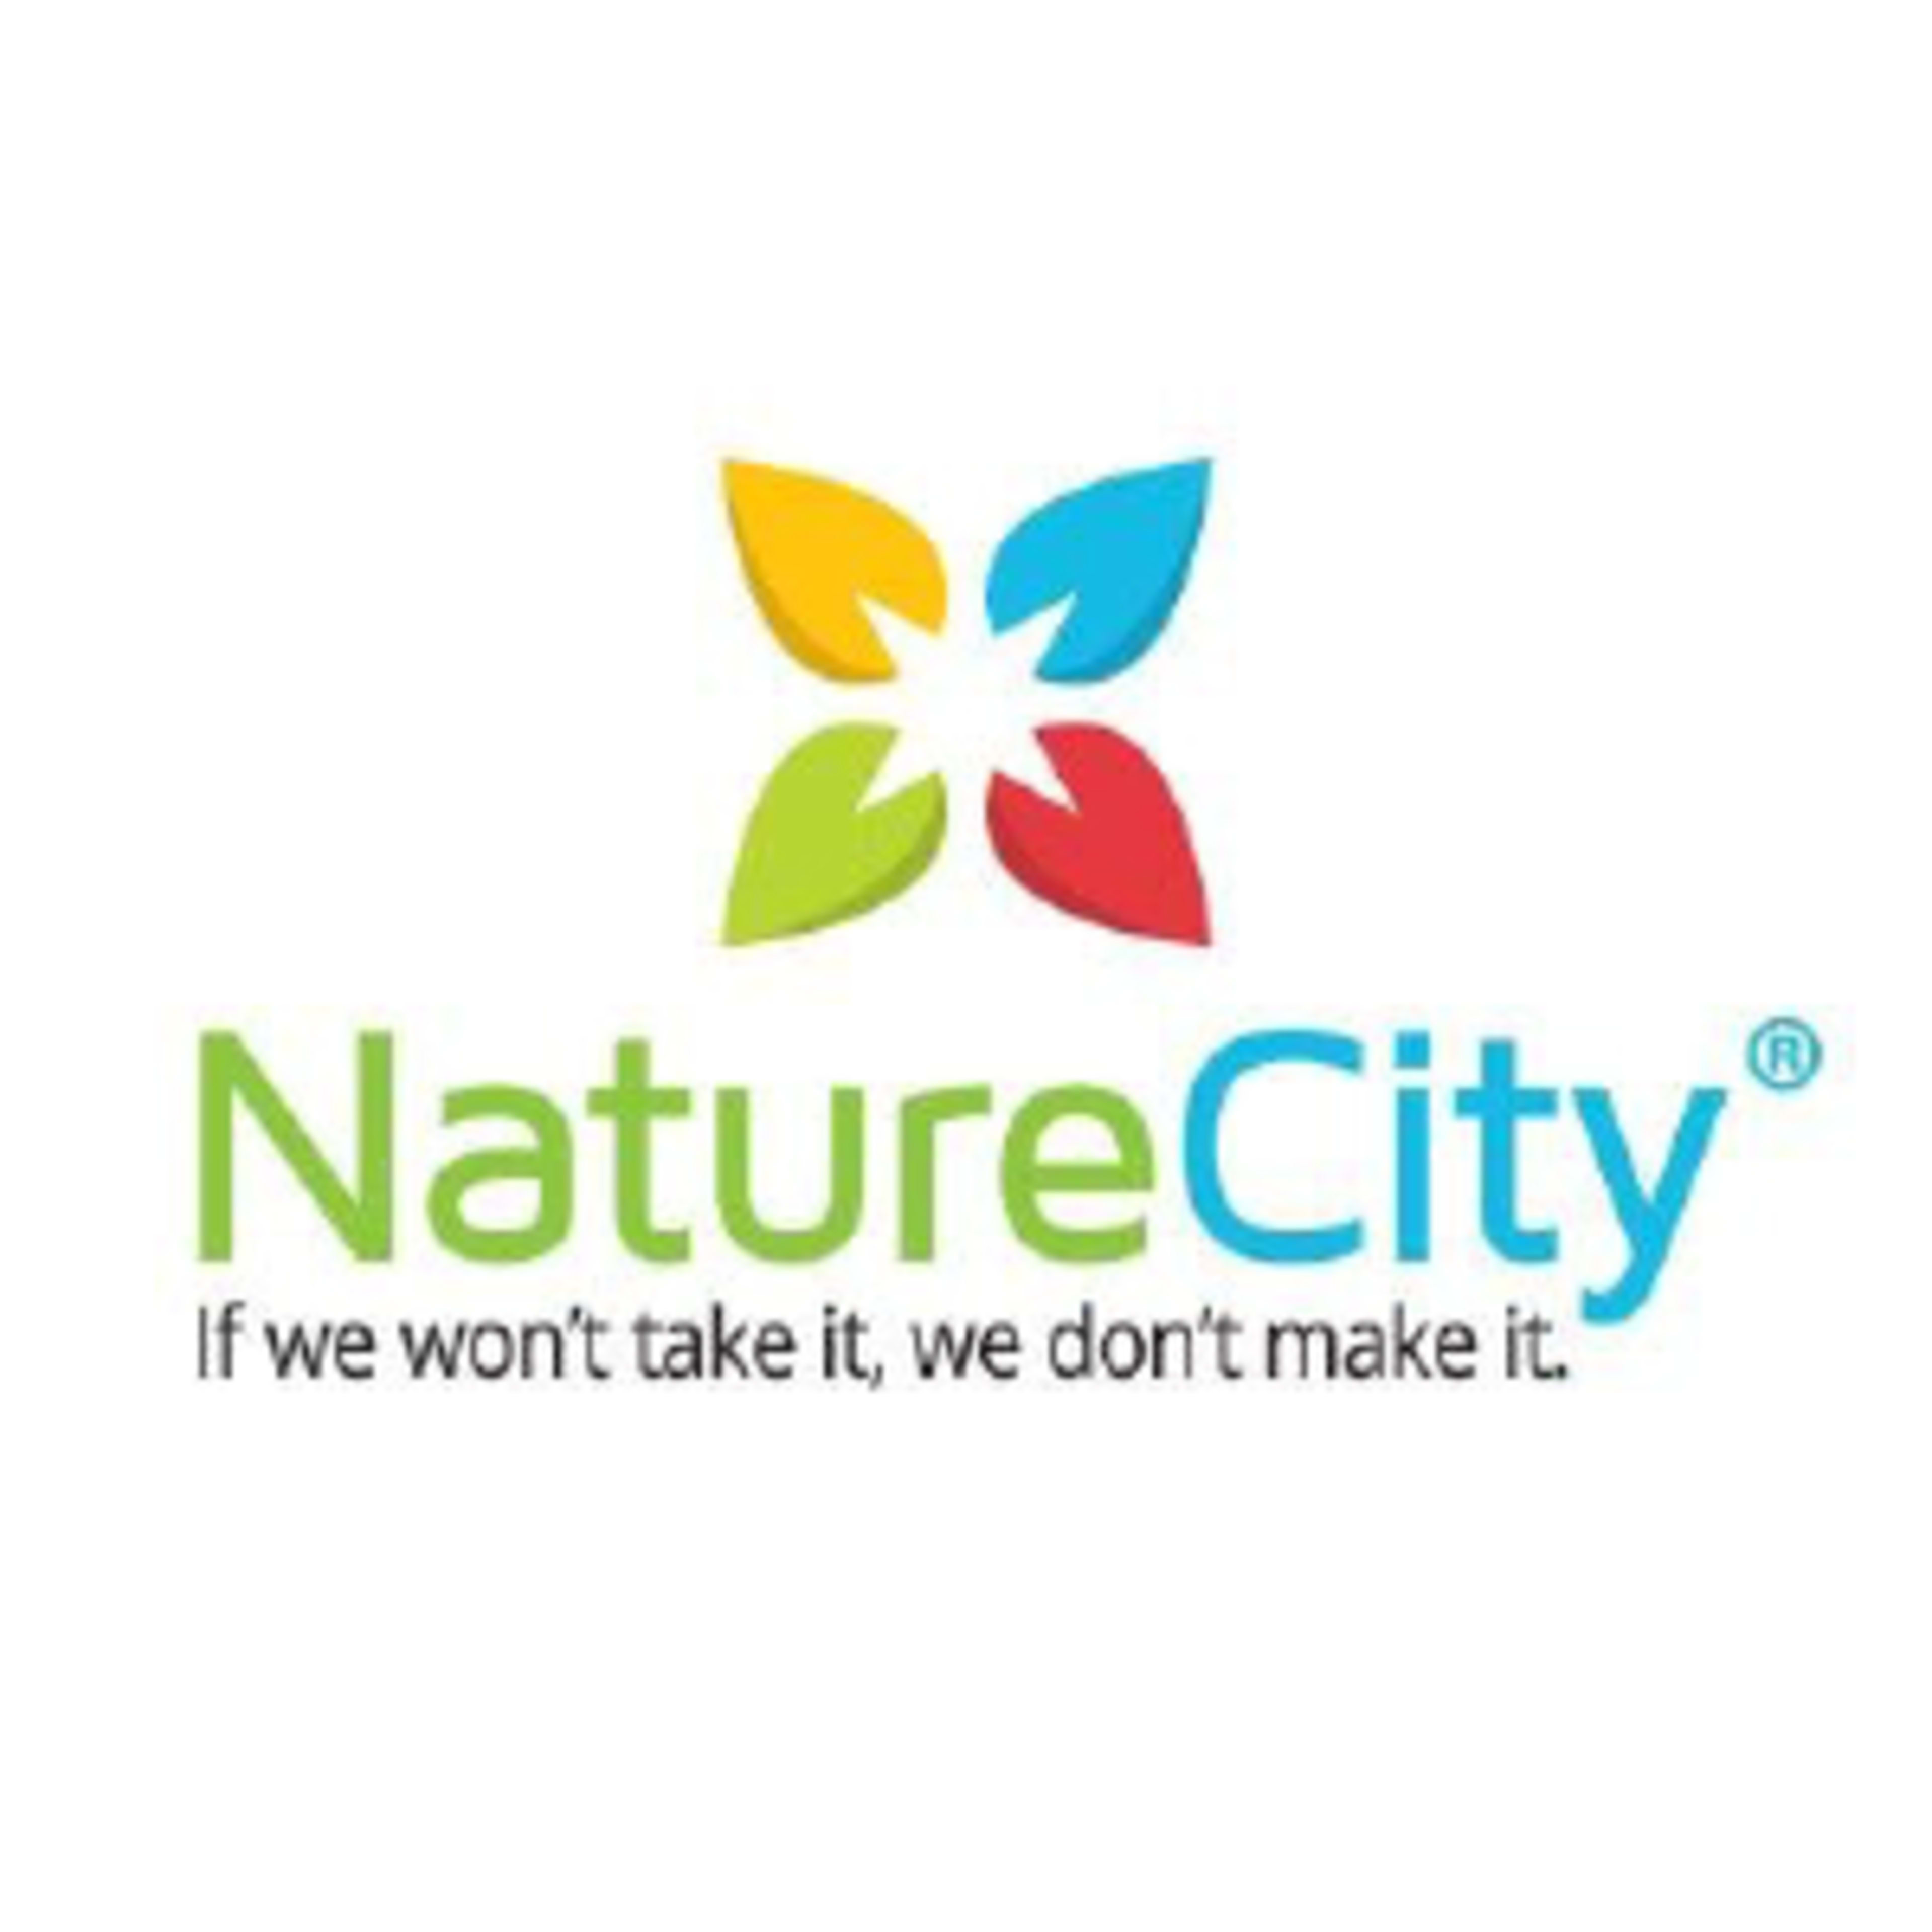 NatureCityCode